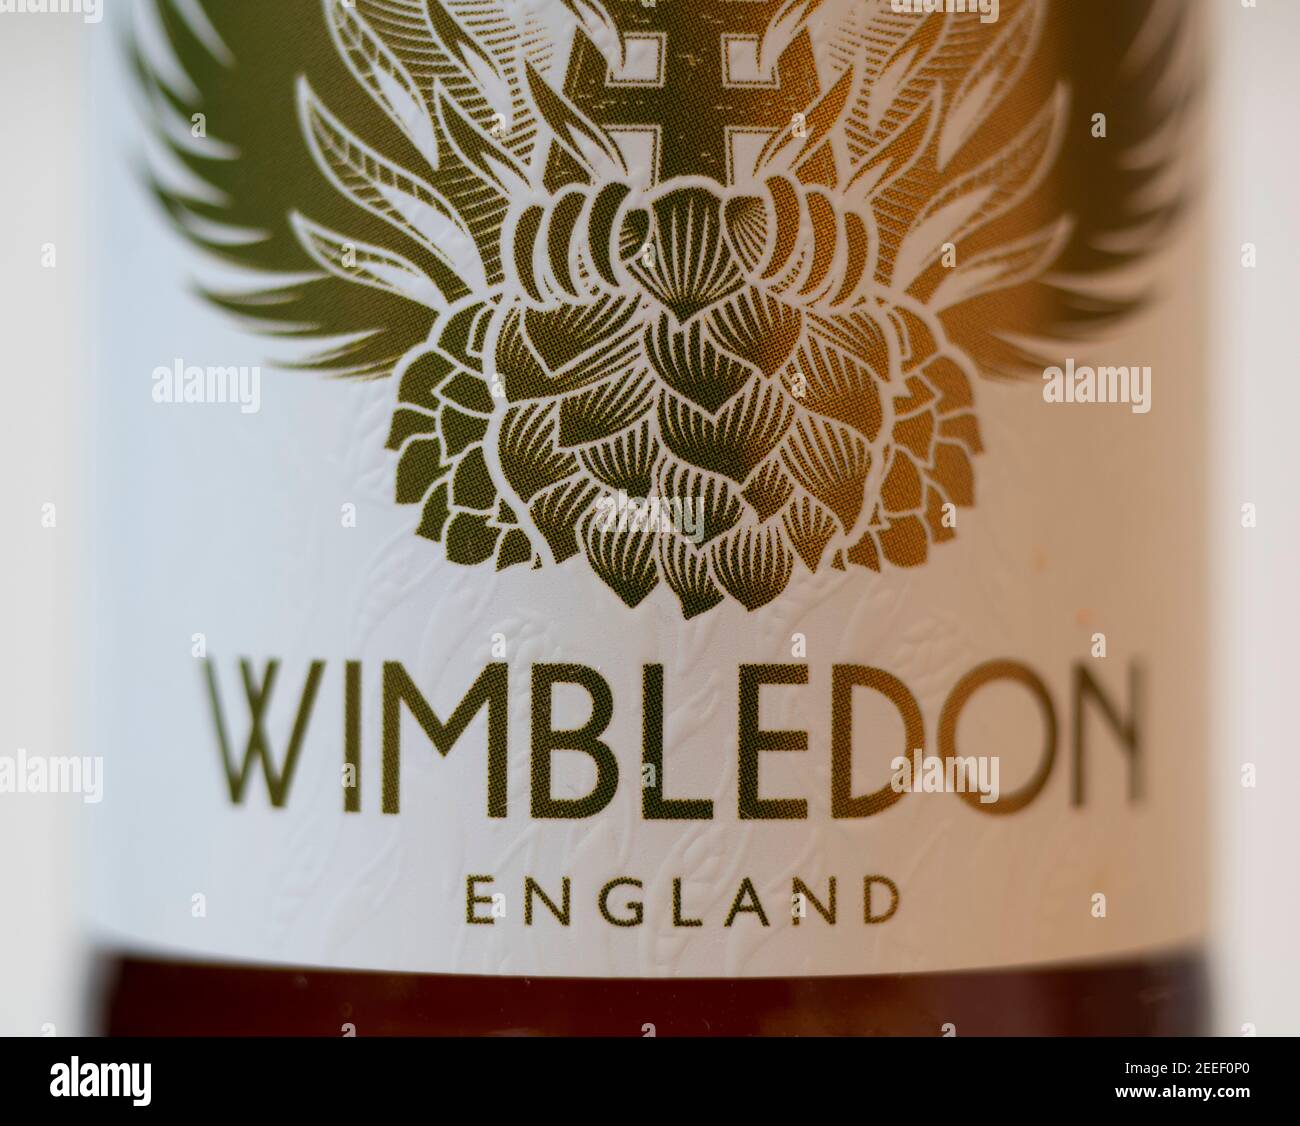 Wimbledon French Craft Lager, étiquette de bouteille de bière en gros plan Banque D'Images